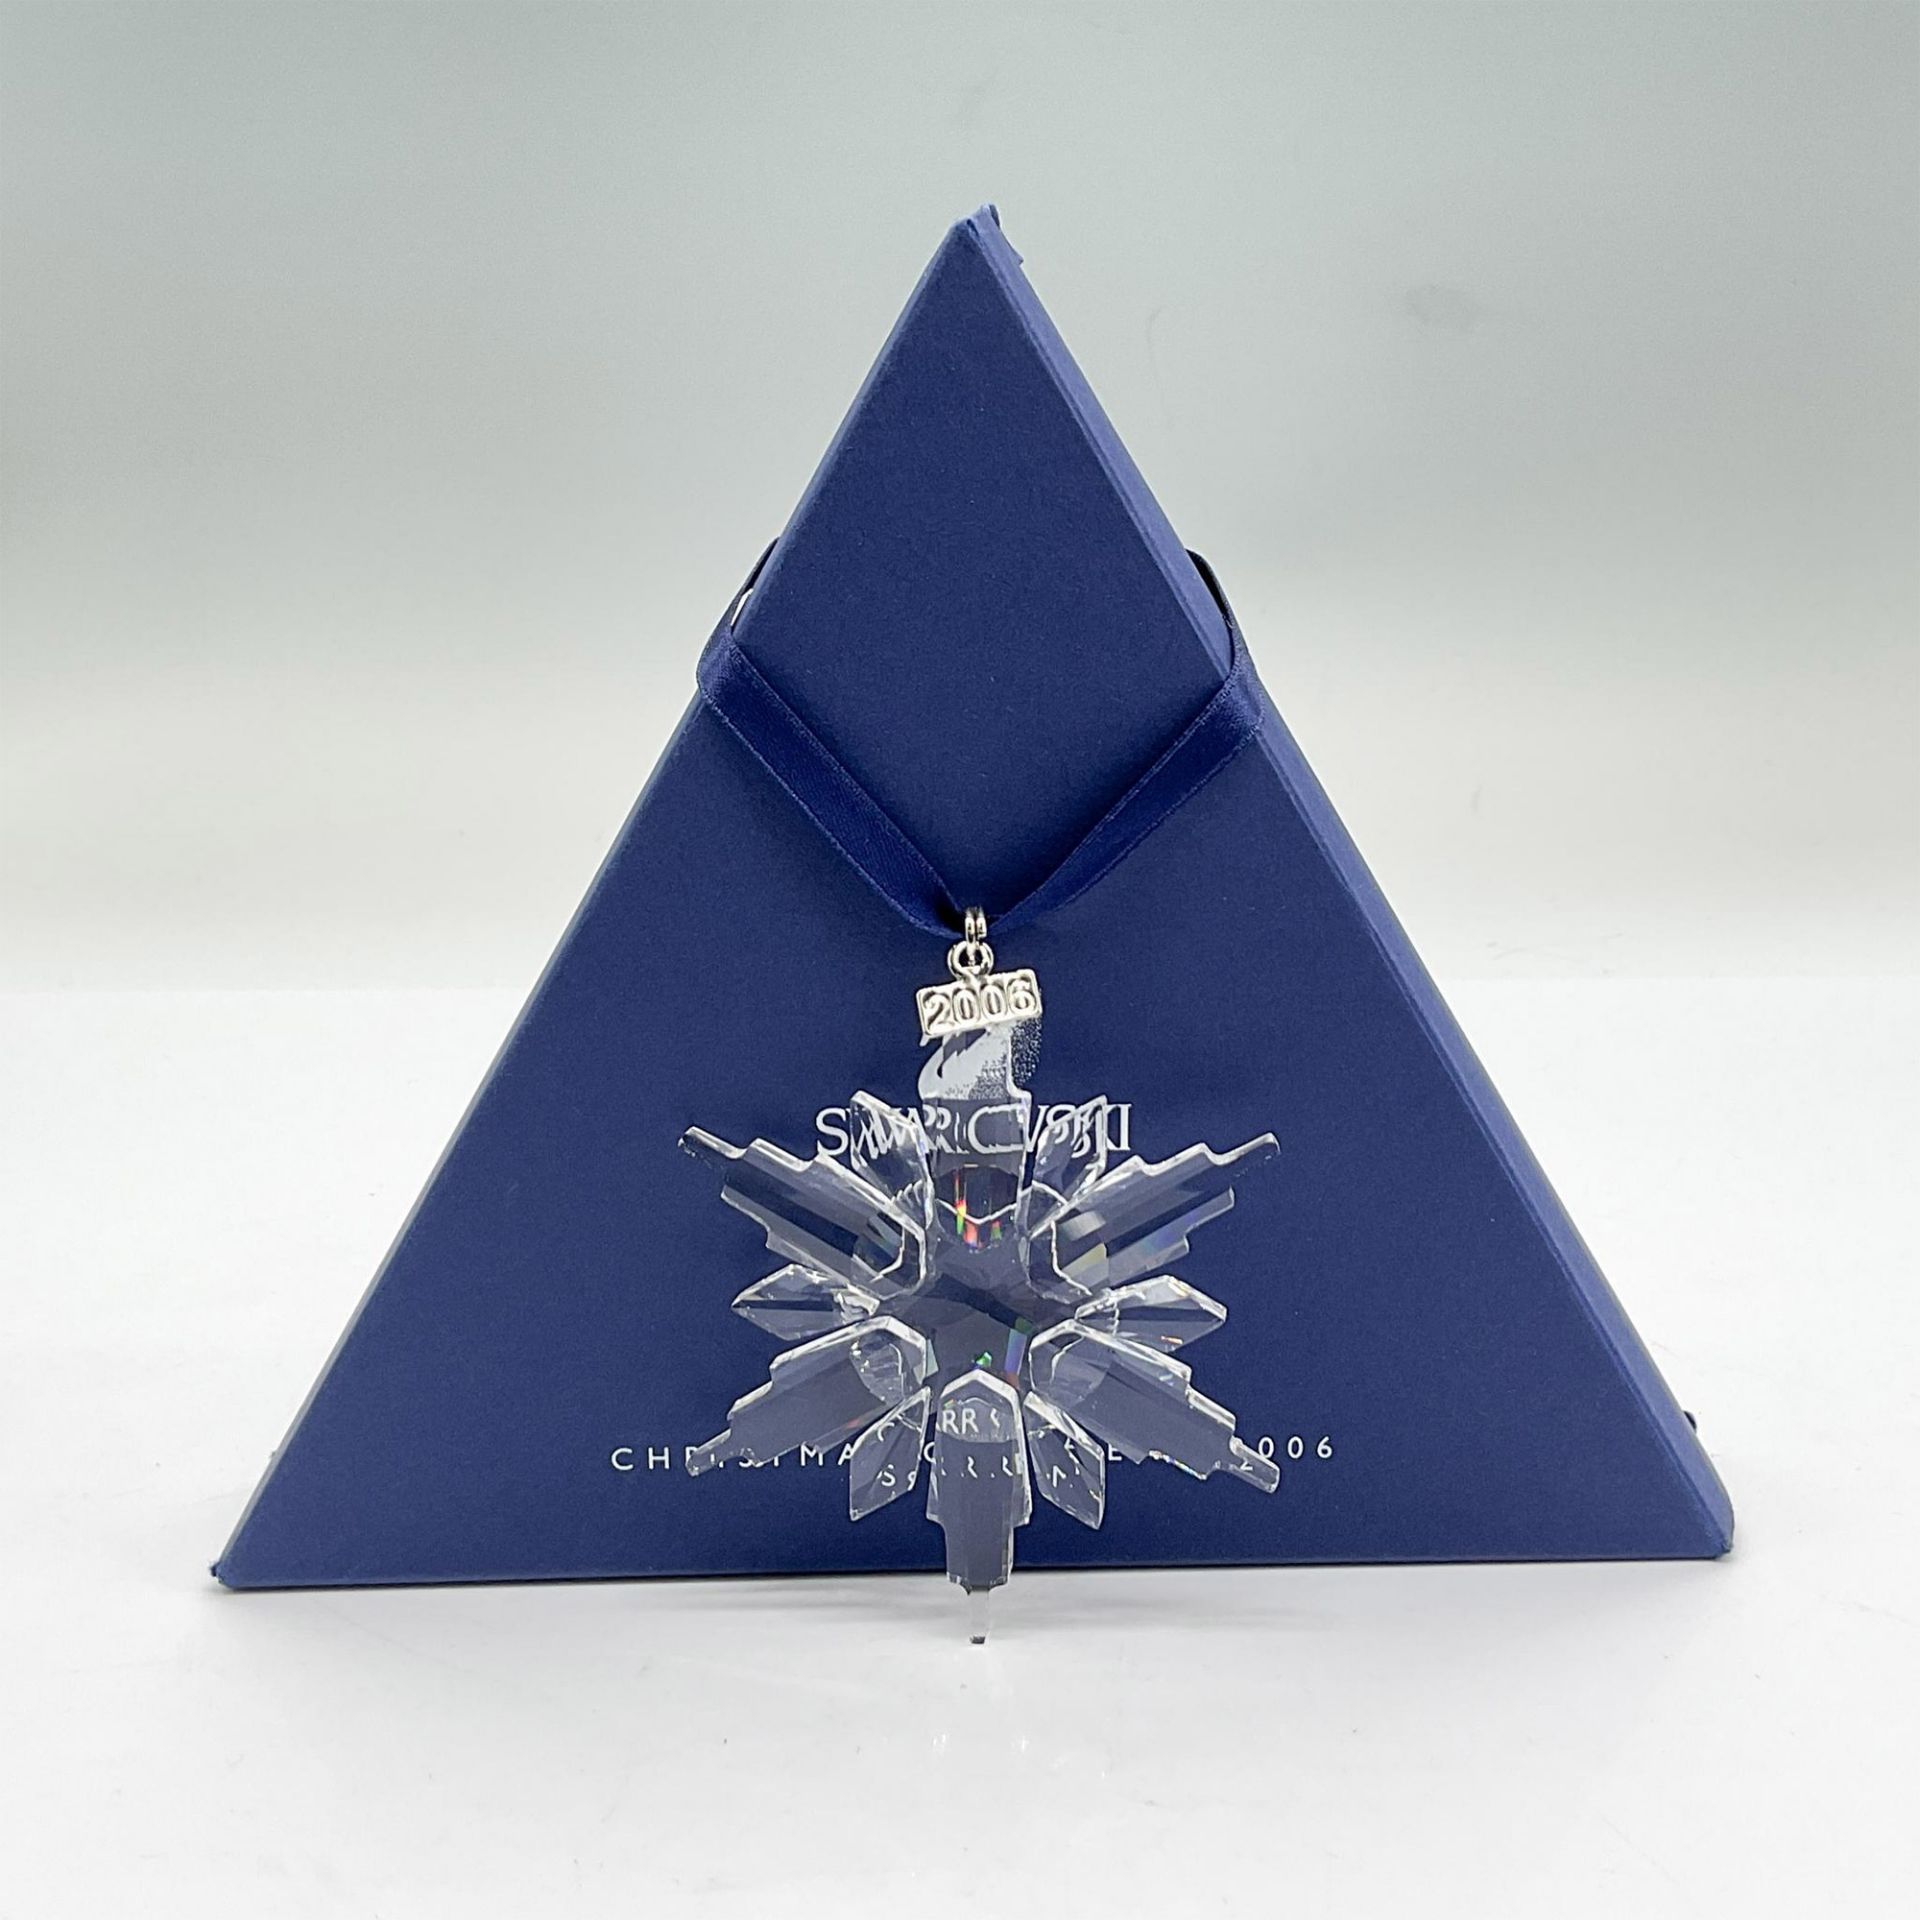 Swarovski Crystal Christmas Ornament 2006 - Image 3 of 3